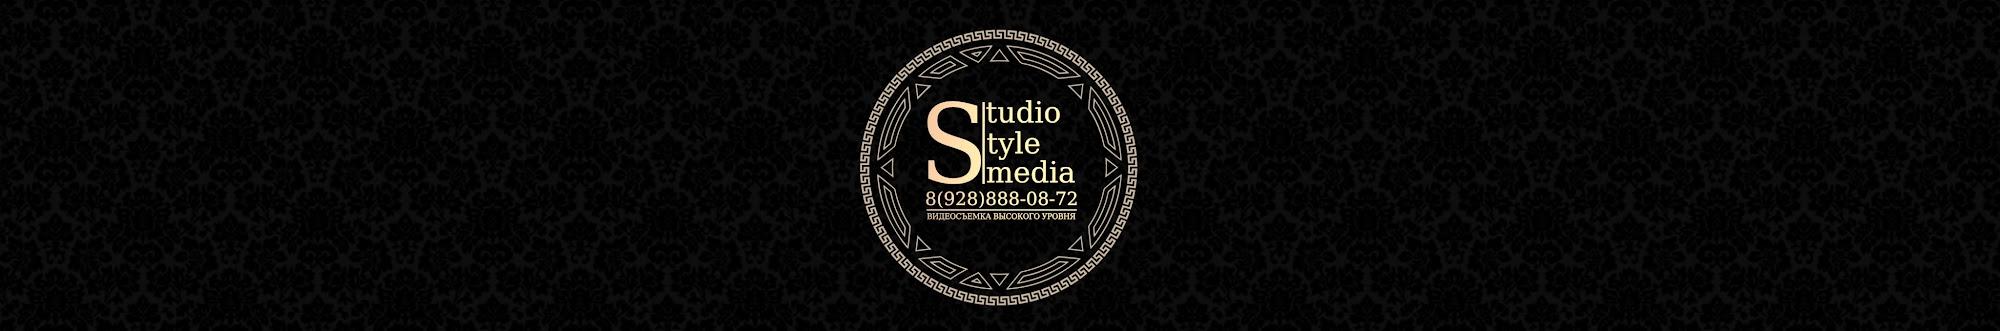 Studio Style Media